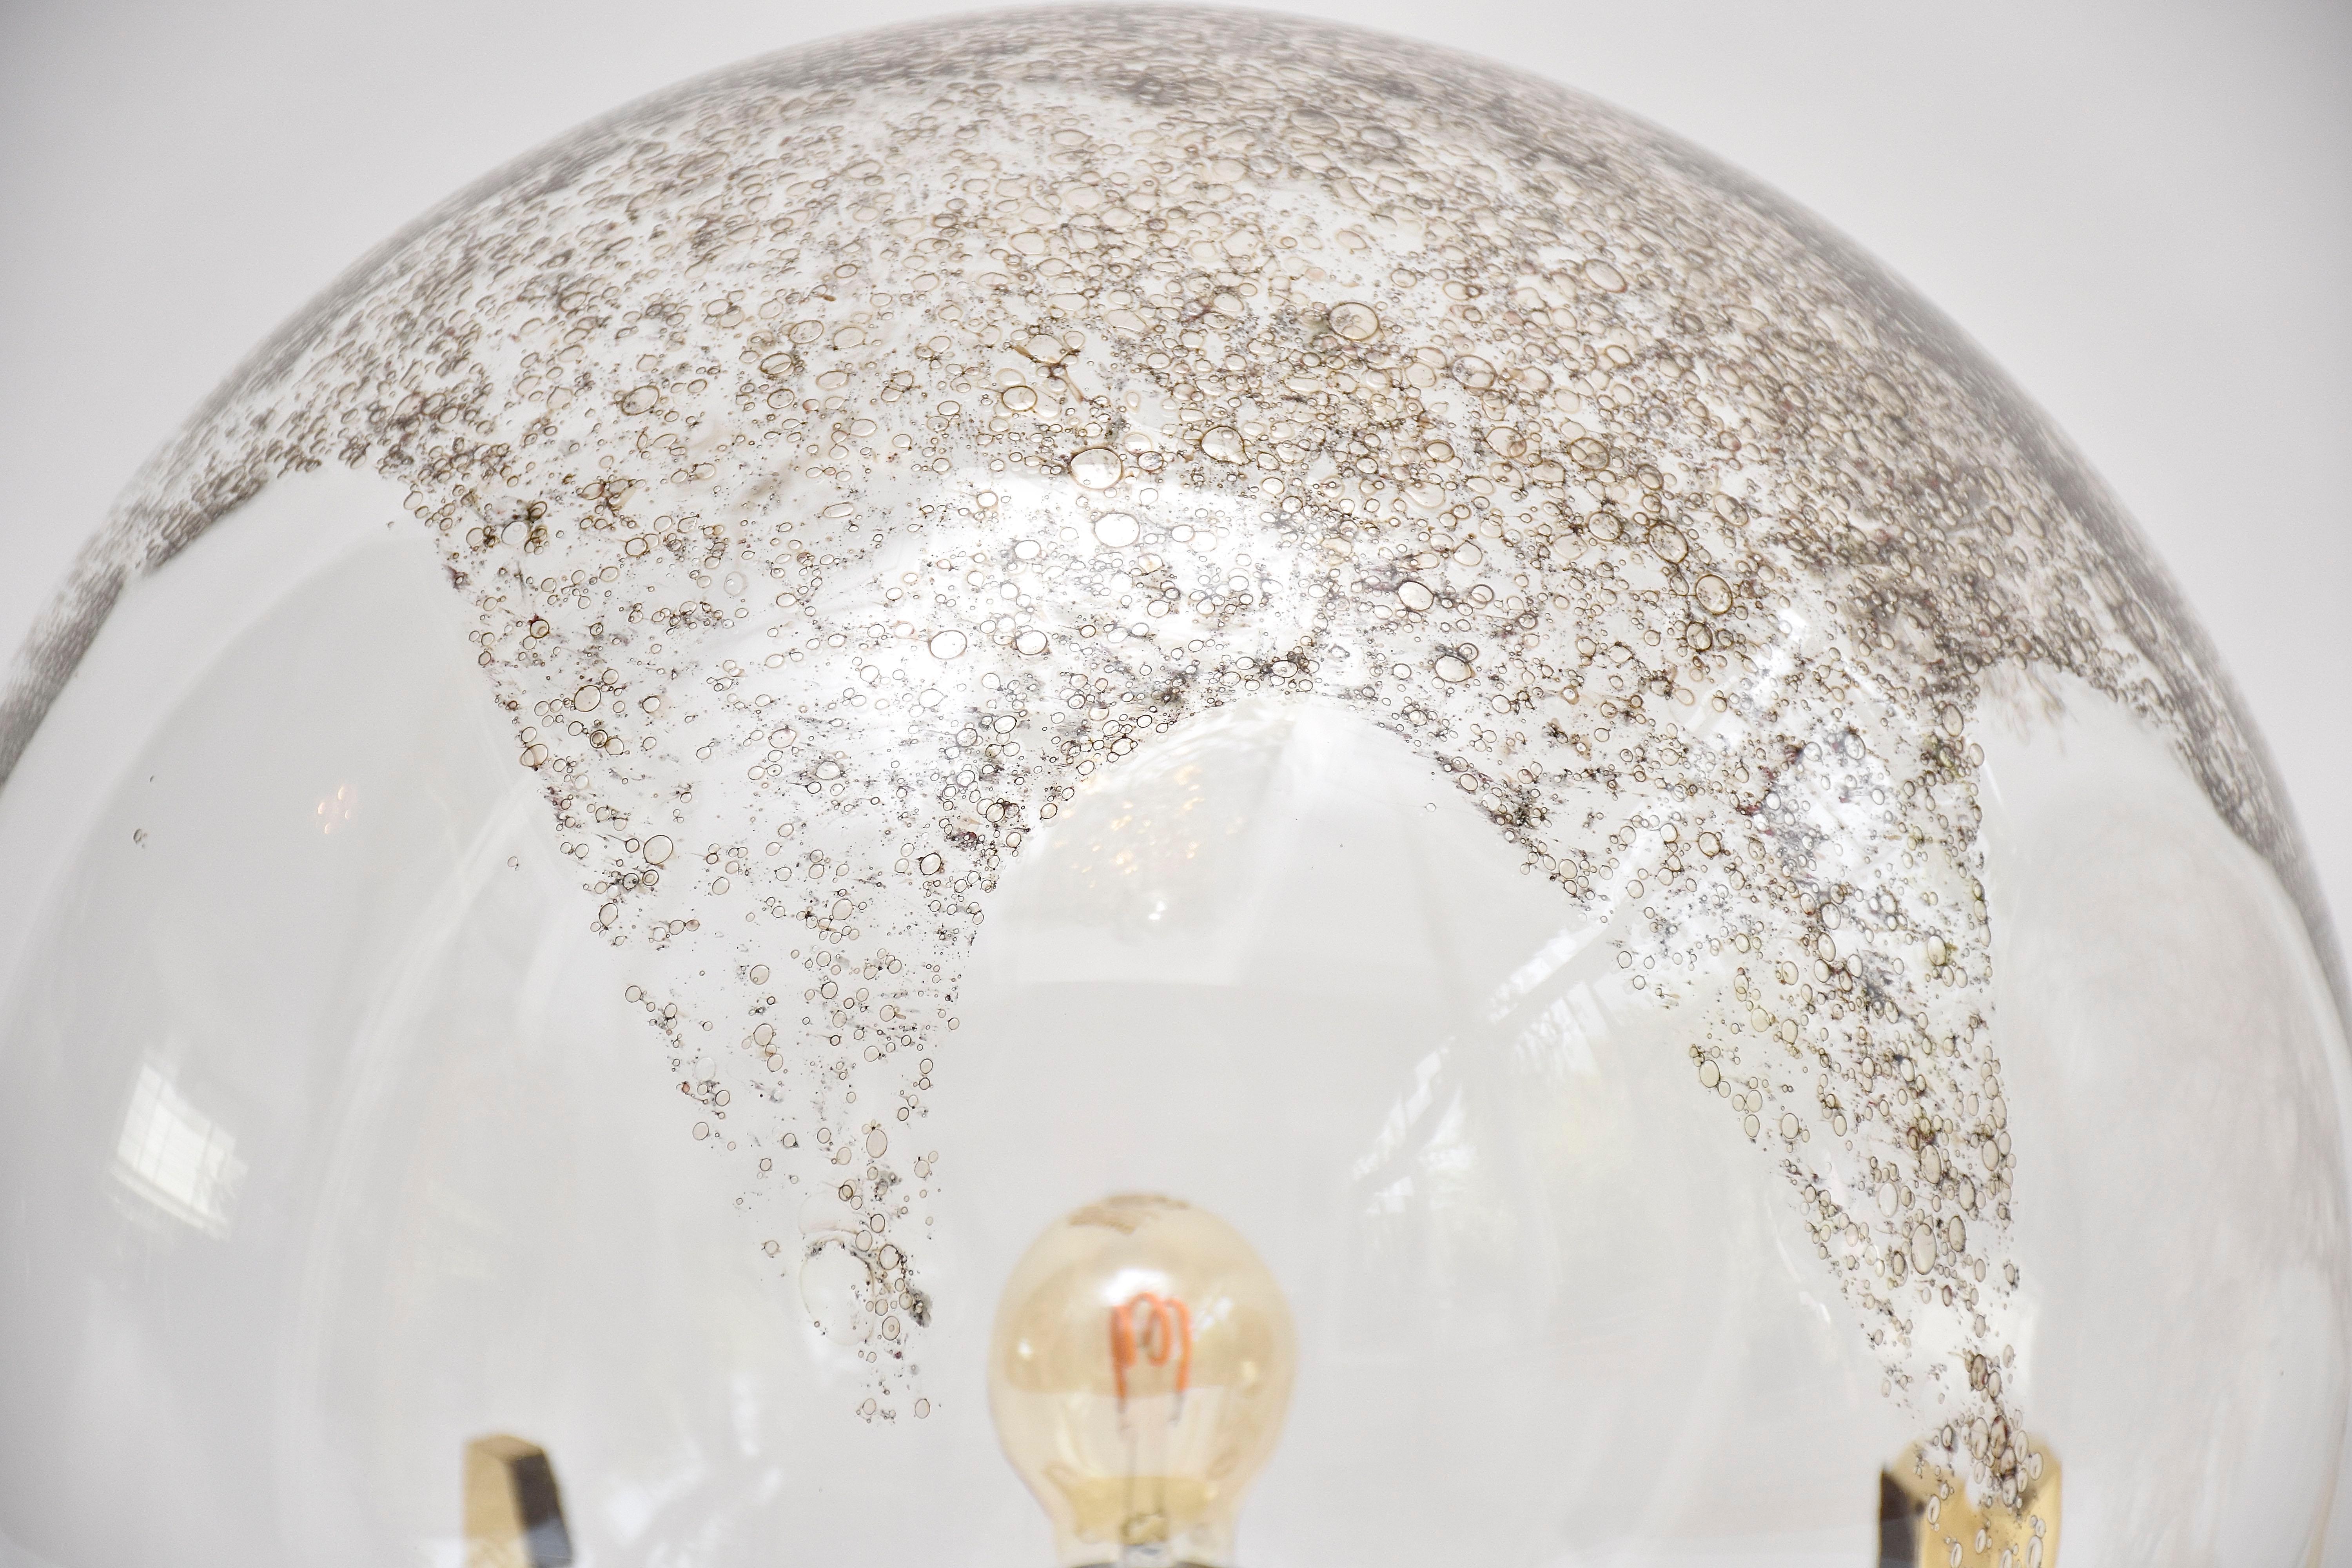 Un lampadaire ou une lampe de table très décoratif et contemporain de La Murrina Murano.
Globe en verre soufflé avec de l'oxyde de fer à l'intérieur, ce qui donne à la lampe un aspect spectaculaire.
Cadre en laiton poli. 
Lieu d'origine :